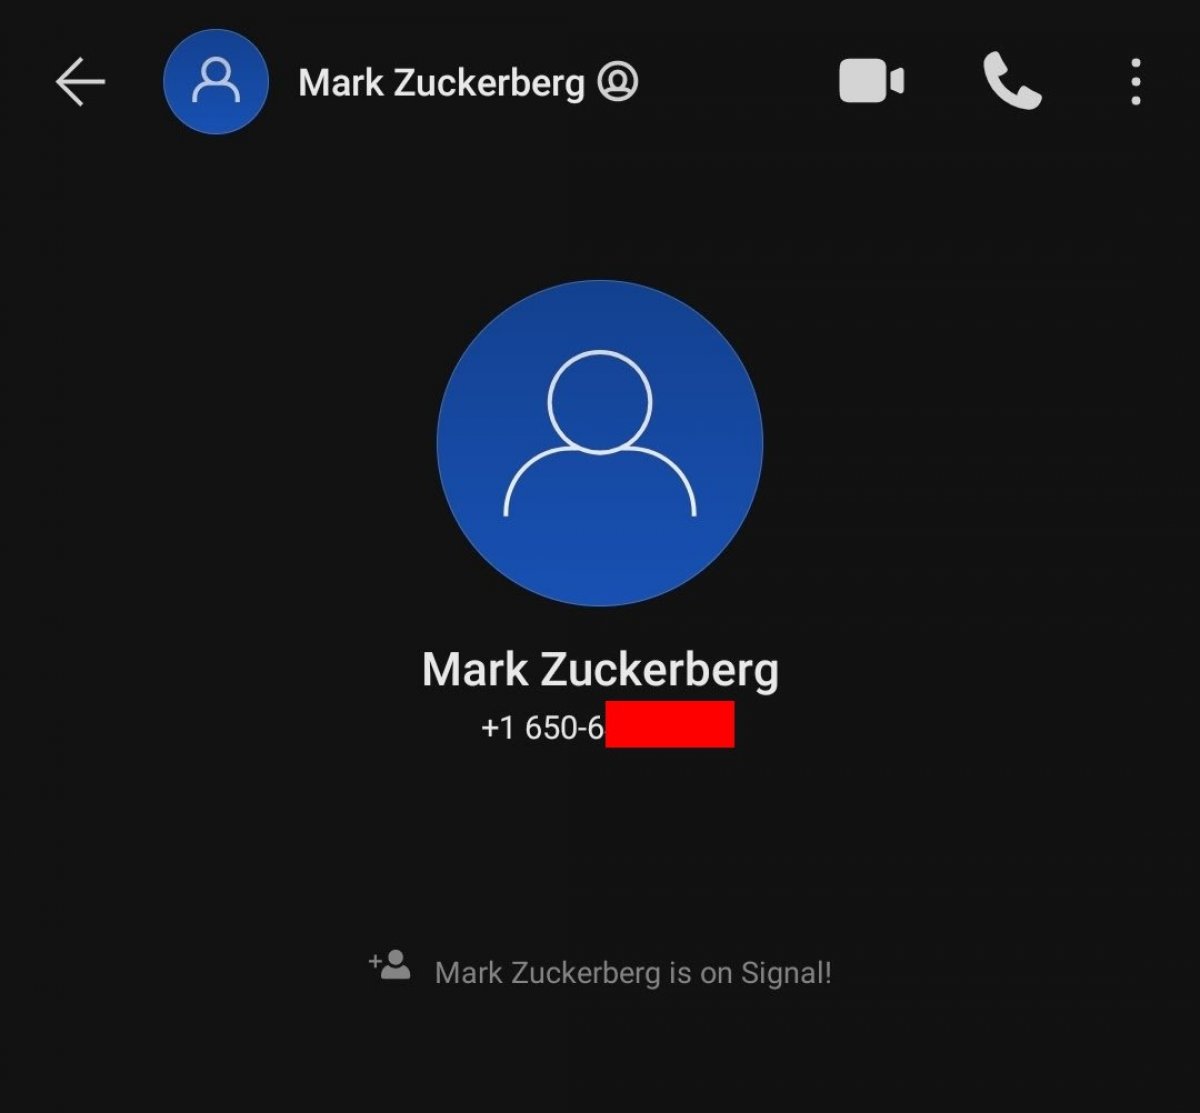 Facebook patronu Mark Zuckerberg, güvenlik için Signal kullanıyor